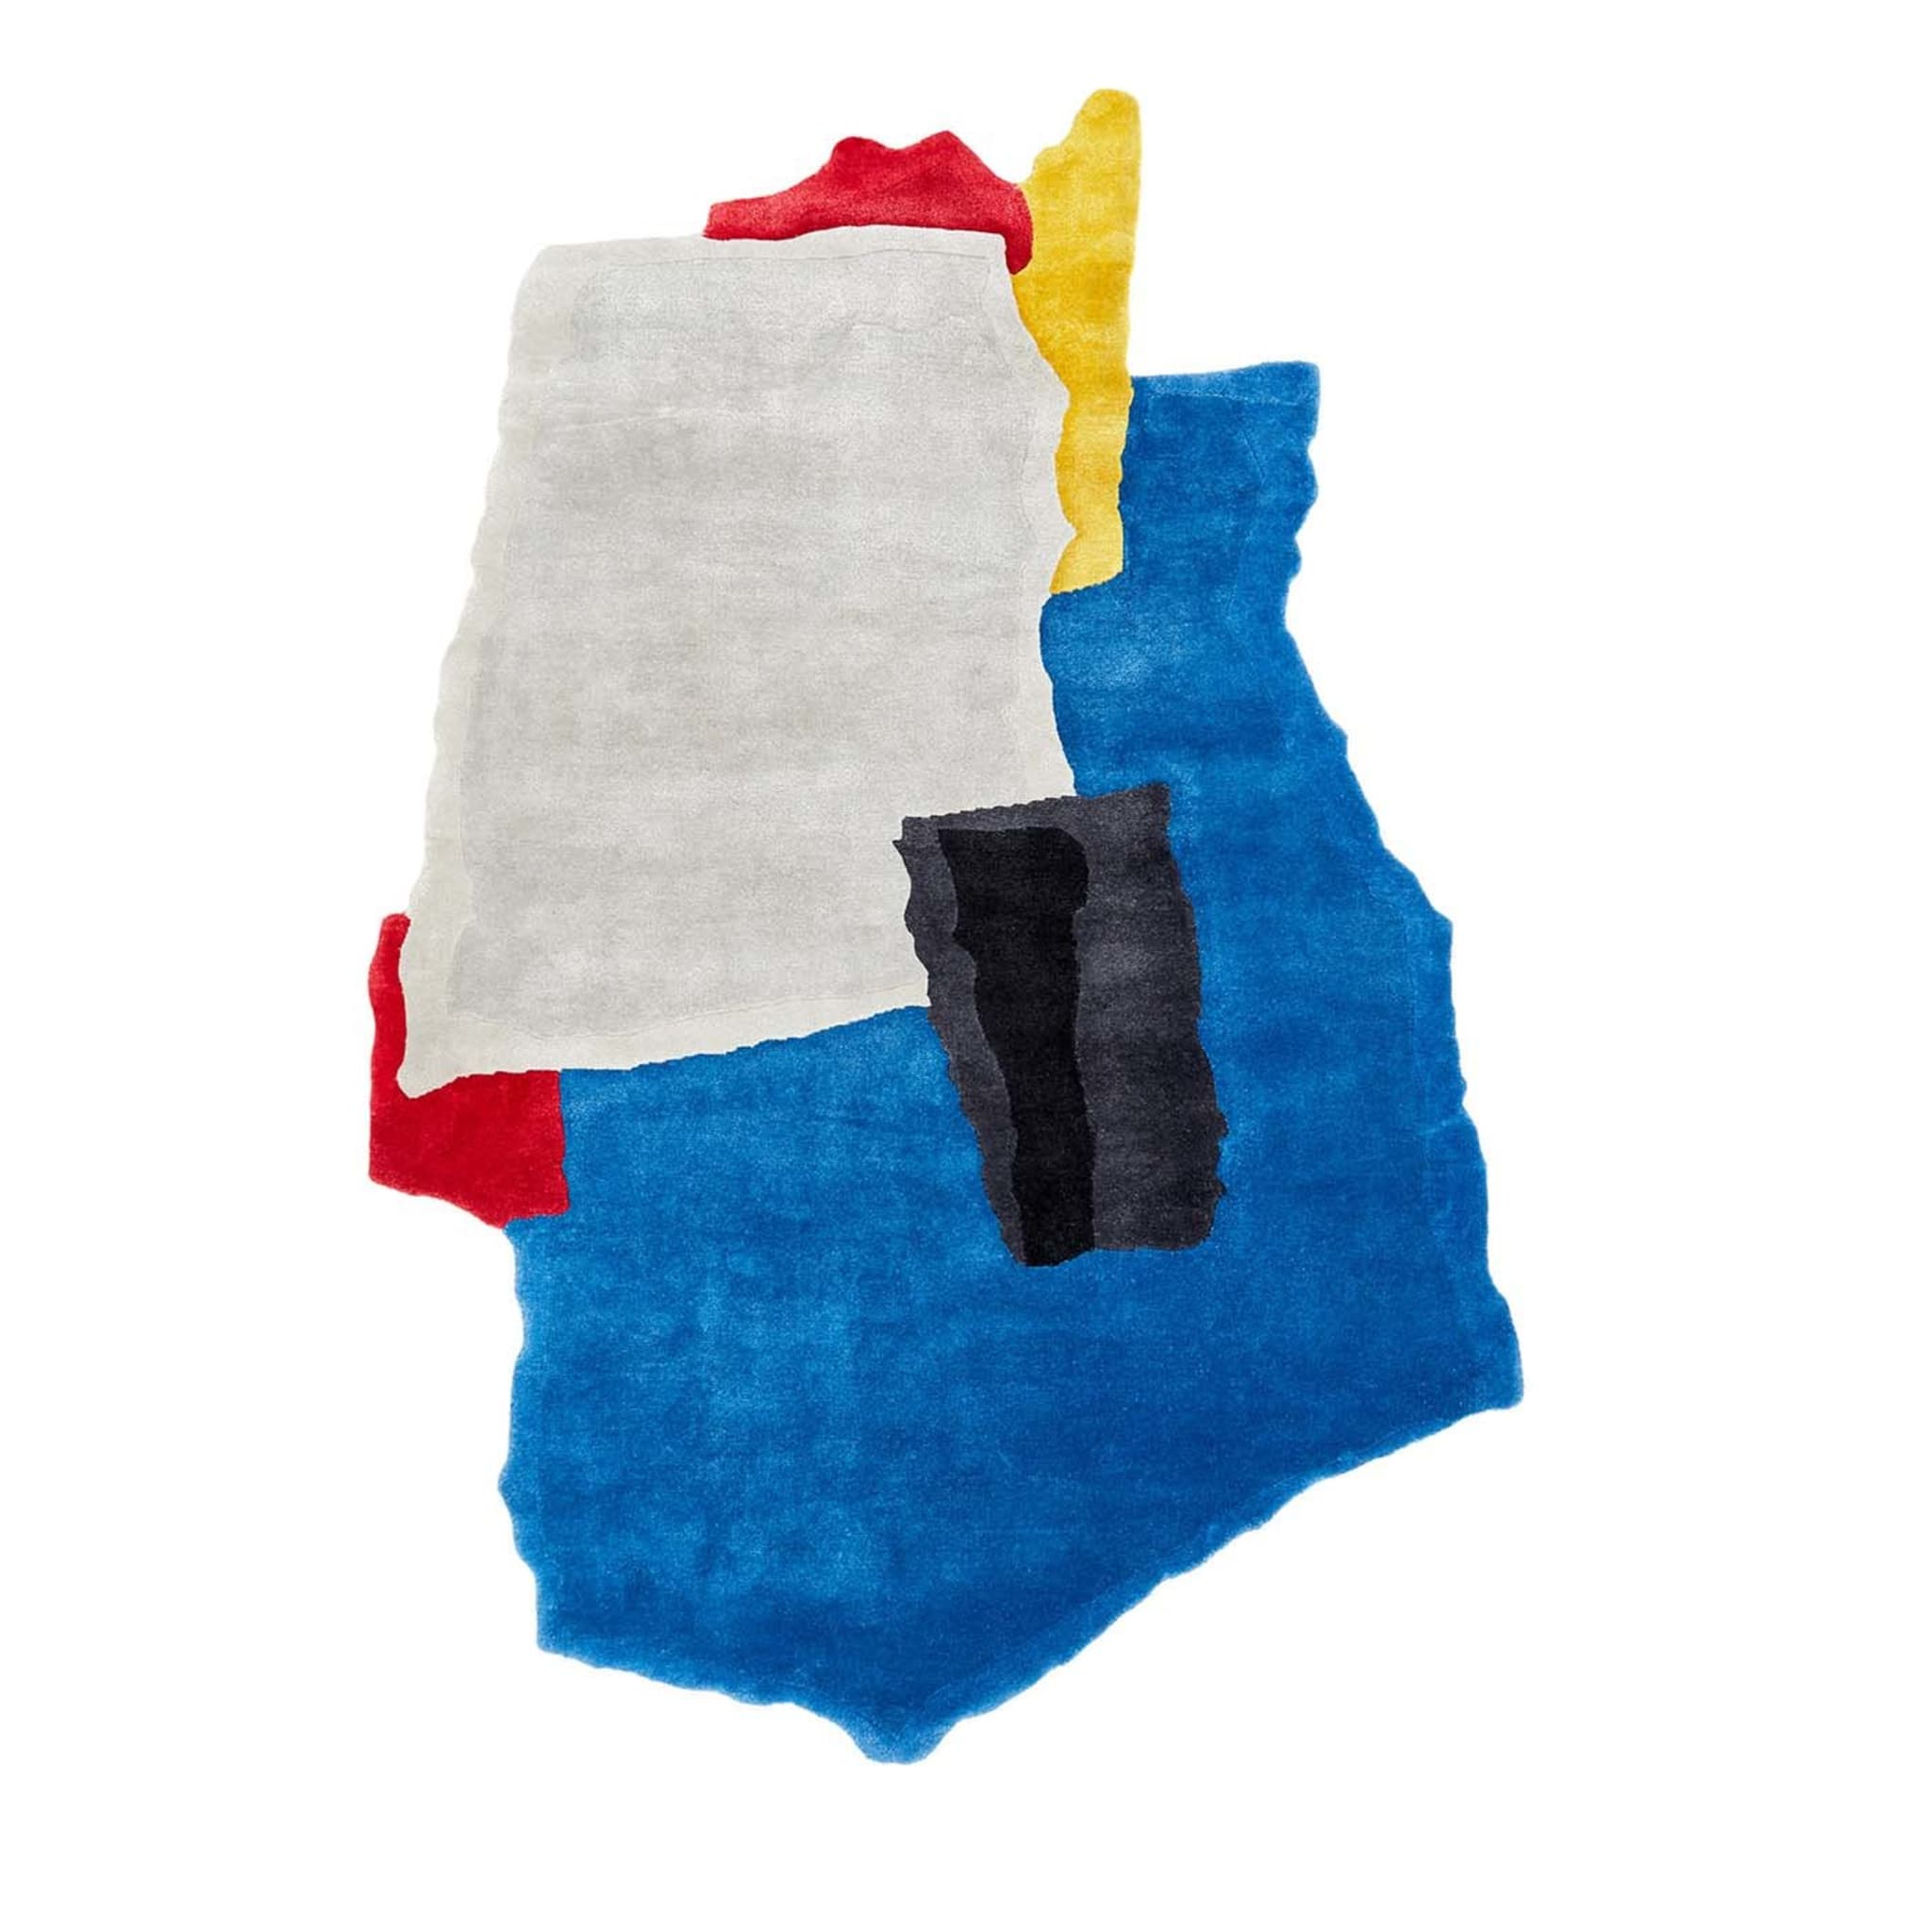 Tappeto in lana multicolore dall'aspetto strappato di Joost van Bleiswijk - Edizione limitata - Vista principale